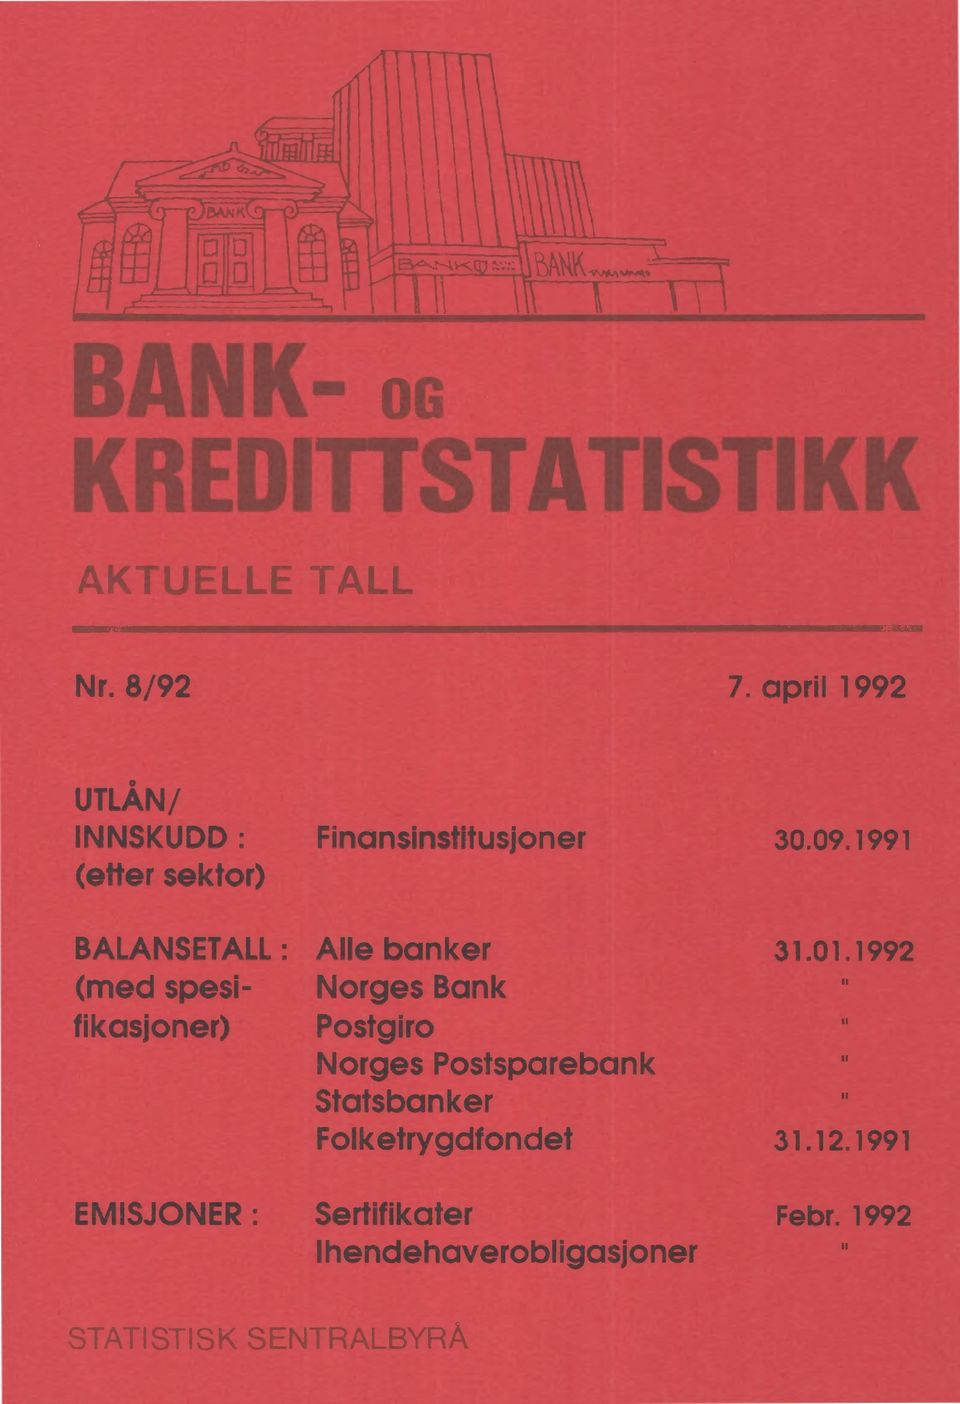 1992 (med spesi- Norges Bank fikasjoner) Postgiro Norges Postsparebank